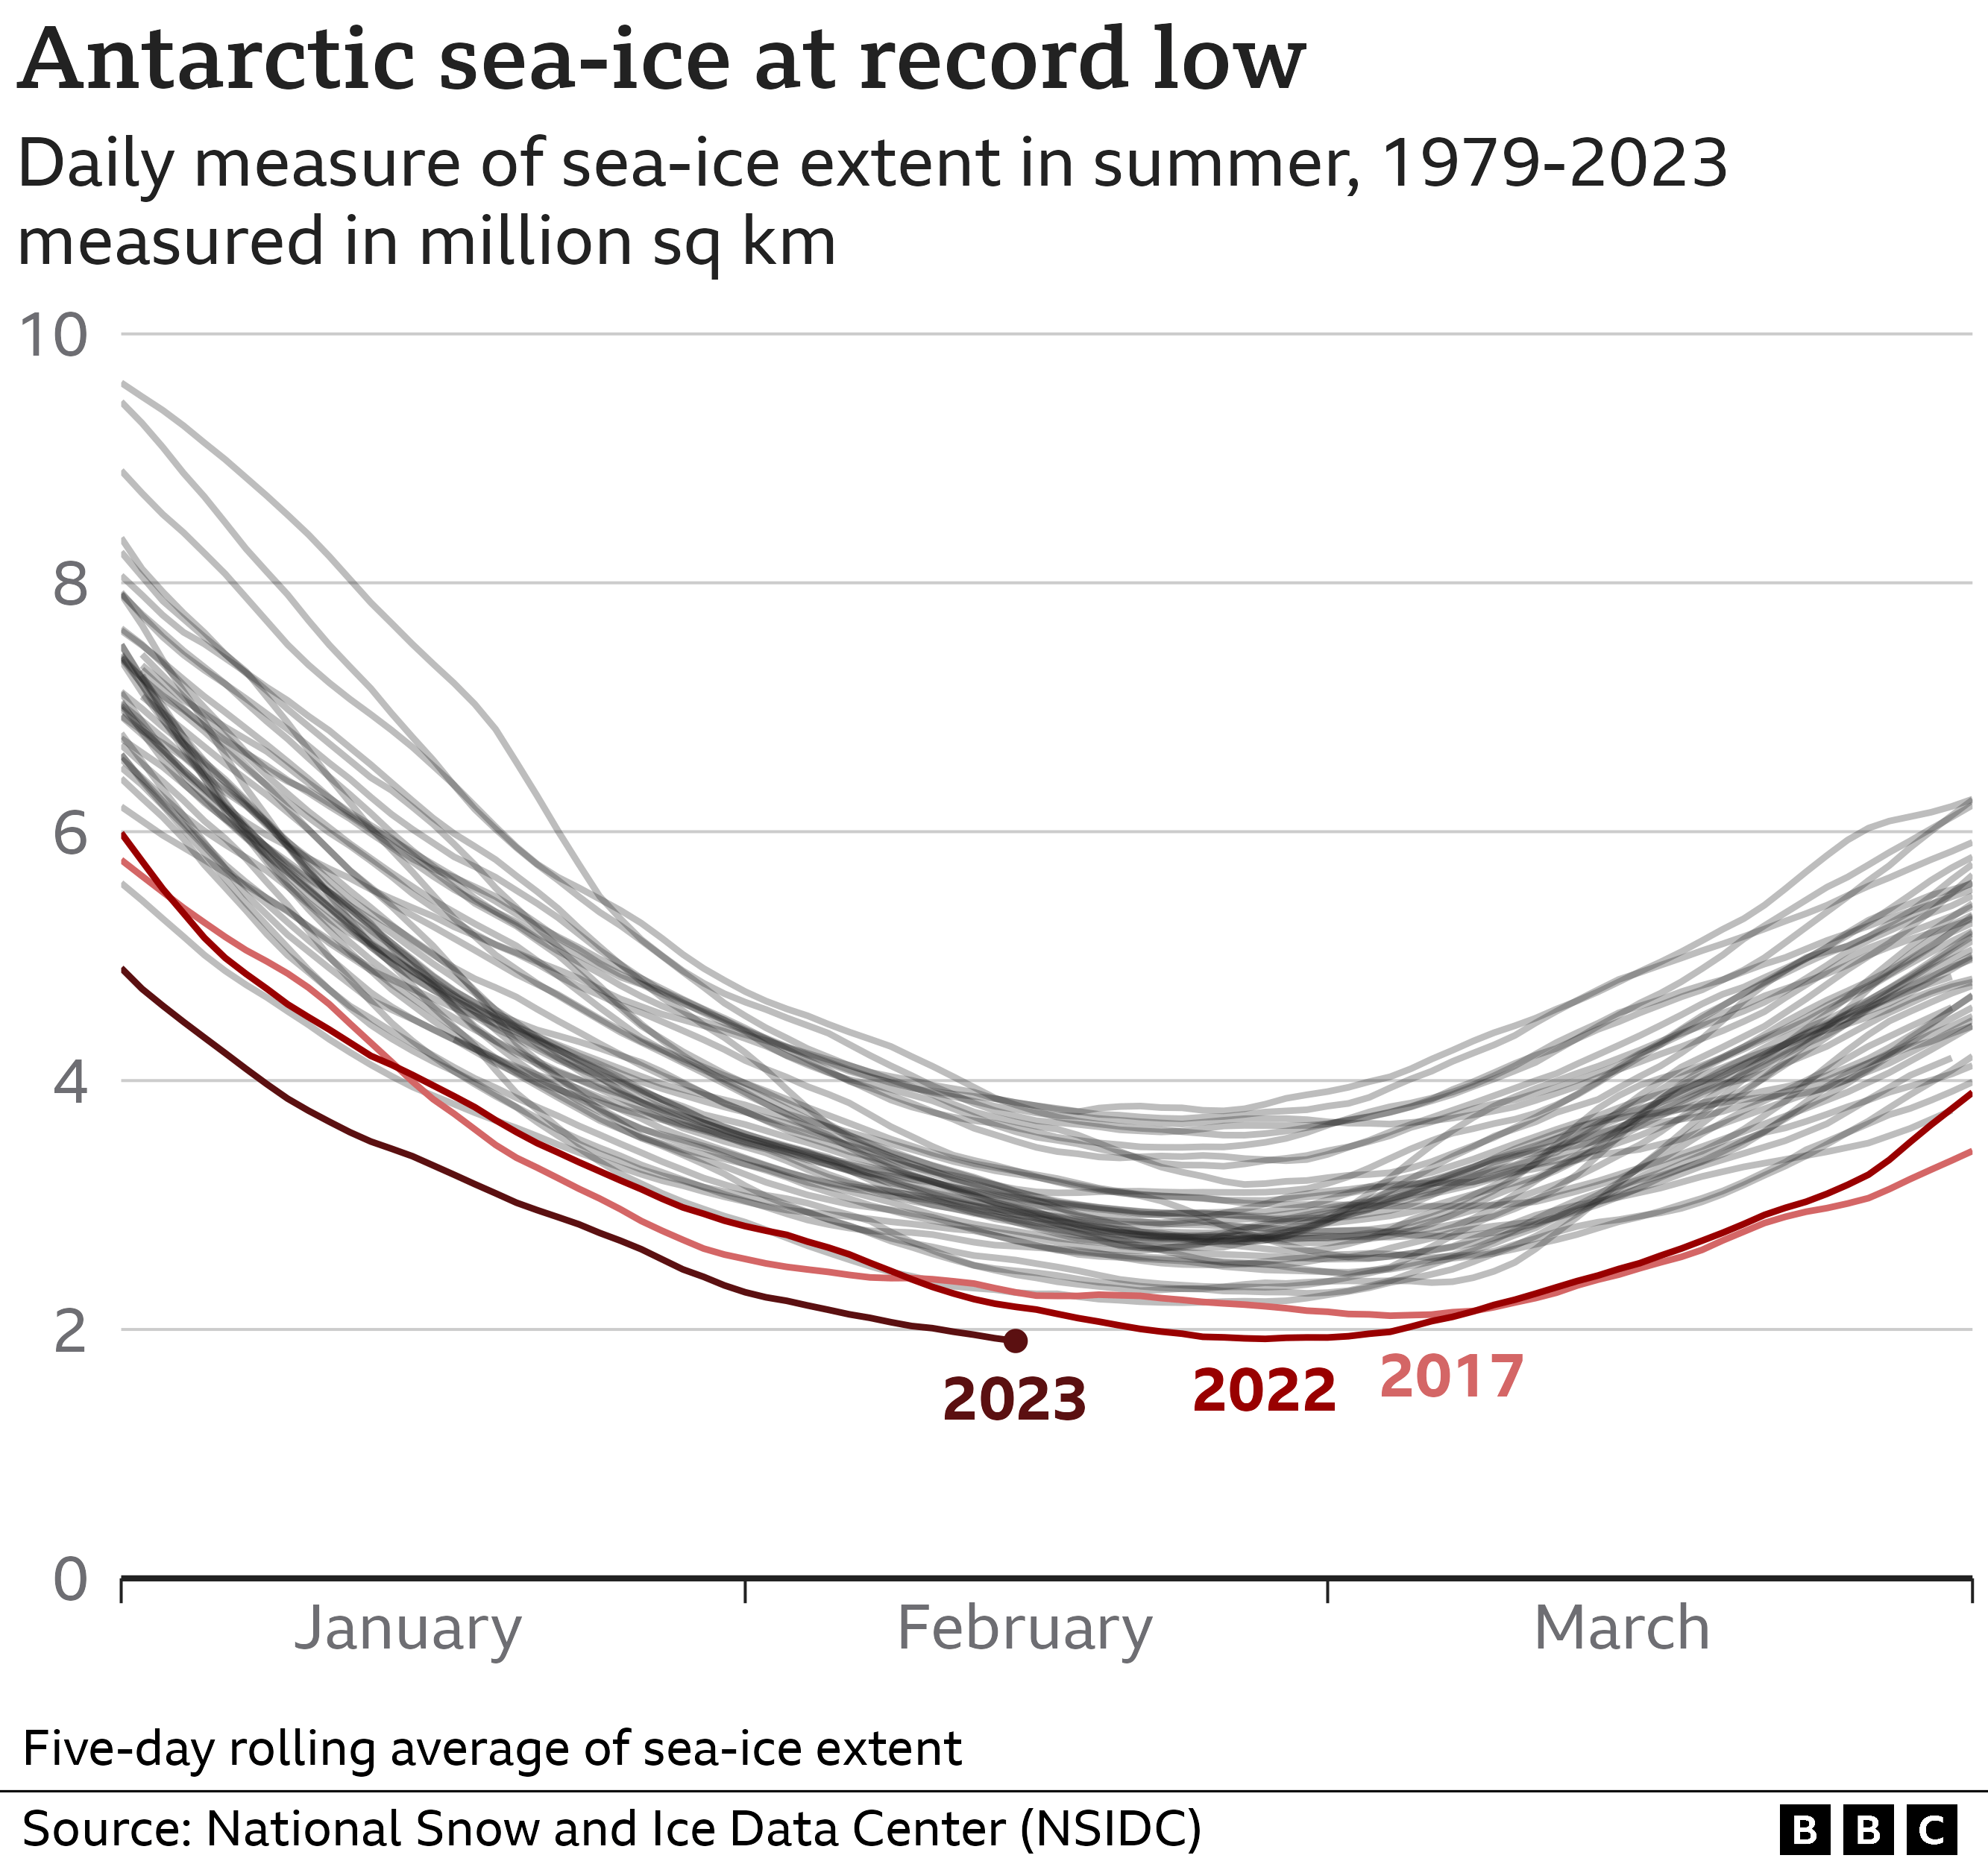 Liniendiagramm, das den gleitenden 5-Tage-Durchschnitt der Meereisausdehnung in der Antarktis mit einer Linie pro Jahr seit 1979 zeigt. Die drei letzten Jahre sind hervorgehoben: 2017 wurde Anfang März ein Rekord aufgestellt, der im Februar 2022 und erneut im Februar 2023 gebrochen wurde.